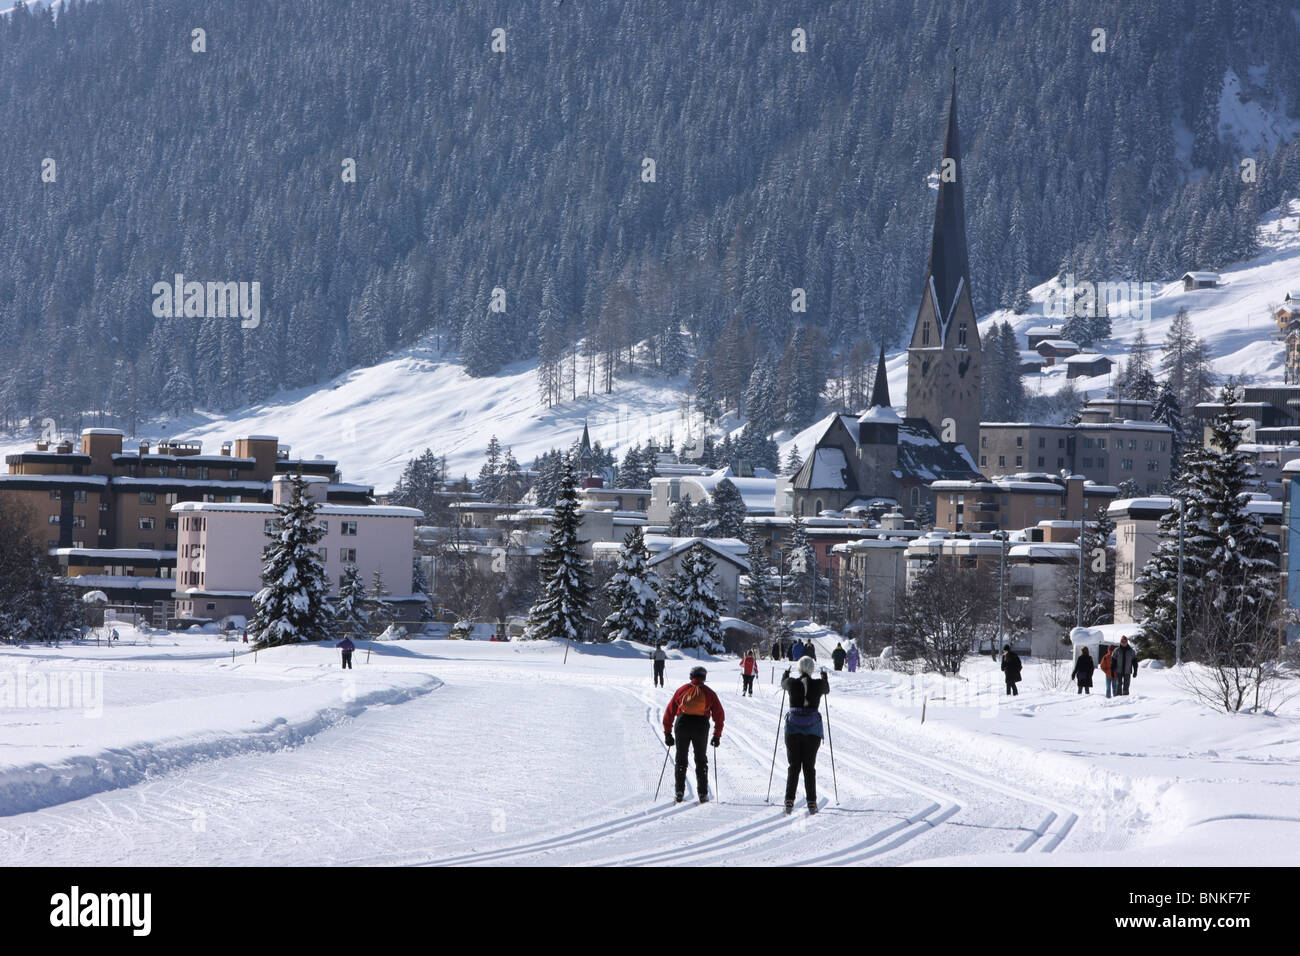 In Svizzera gli sport invernali Sci di fondo sci di fondo posto a Davos Davos Platz chiesa Saint Johann cantone Foto Stock